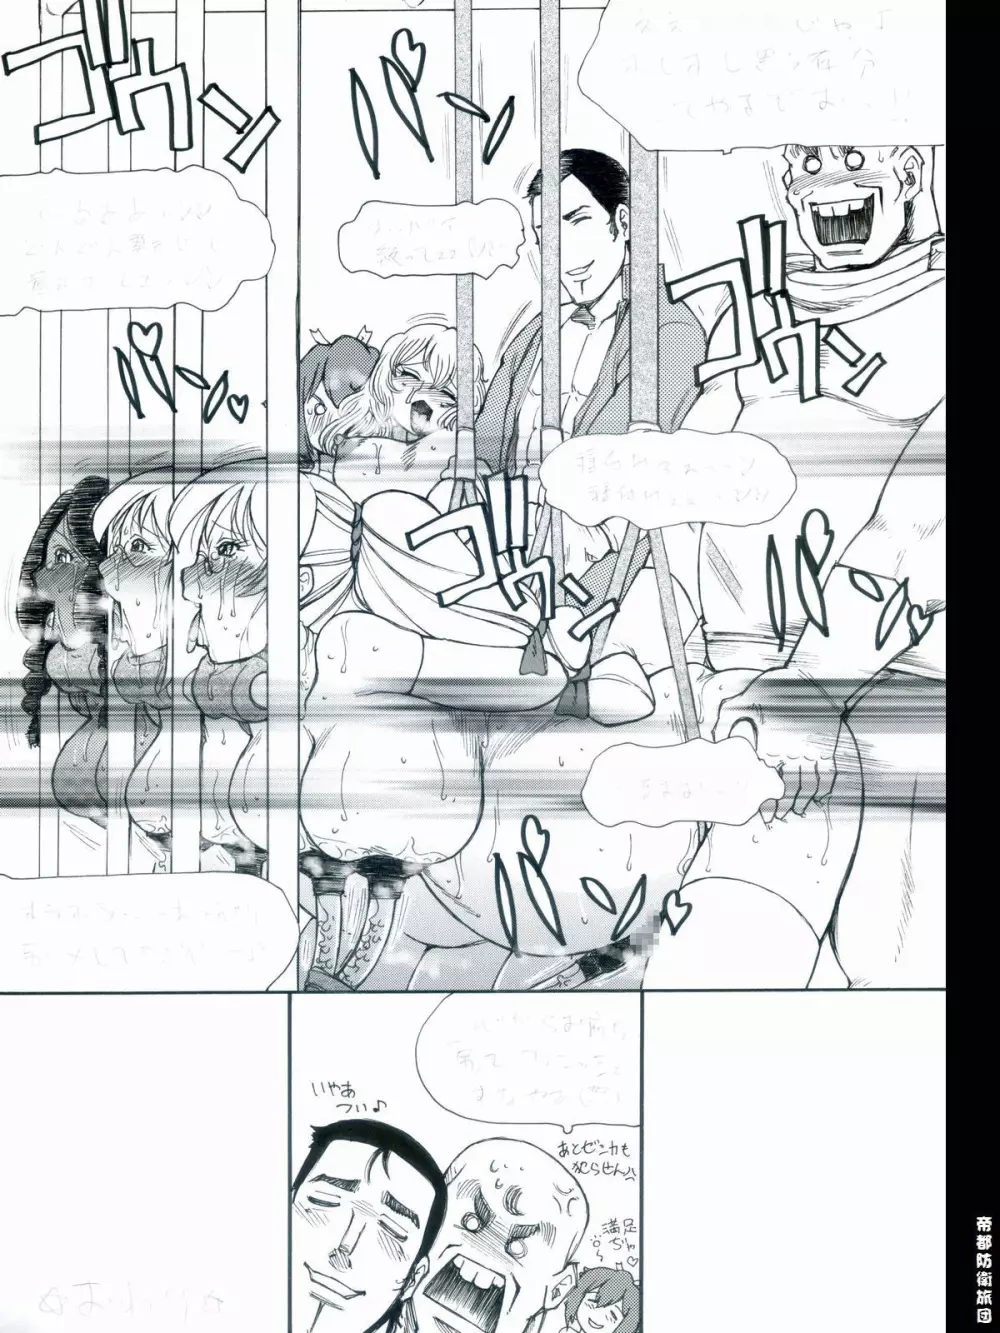 [帝都防衛旅団] RTKBOOK 9-3 「M○Xいぢり(3) 『PANPAN-MAN』」 54ページ